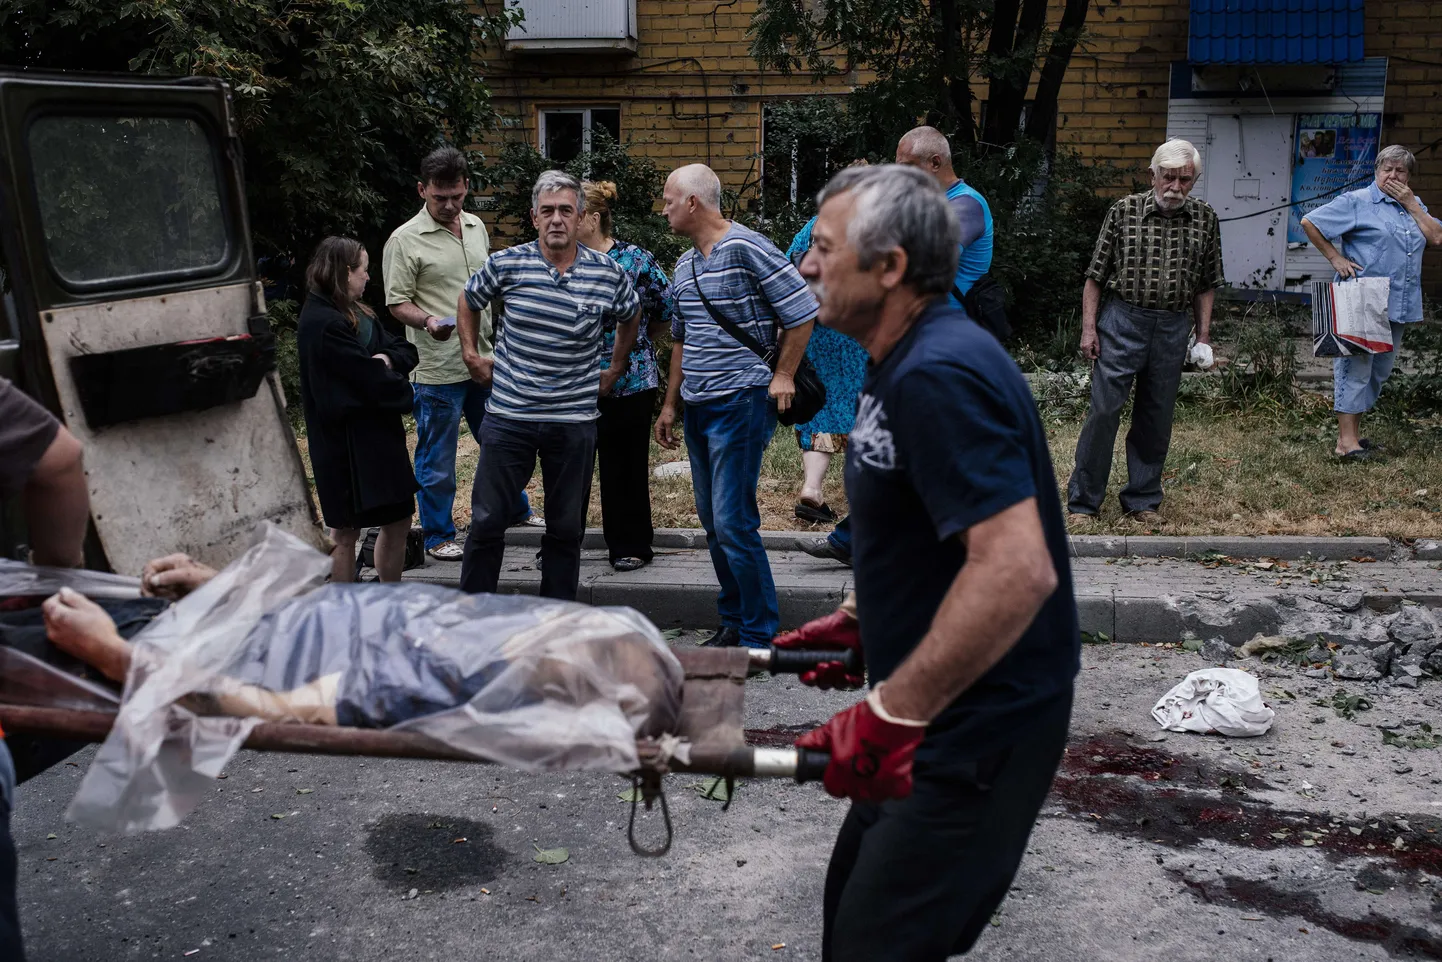 Donetskis sai täna hommikul surma kaks inimest, kes seisid ühistranspordipeatuses. Fotol toimetavad ametnikud ühte ohvrit autosse.